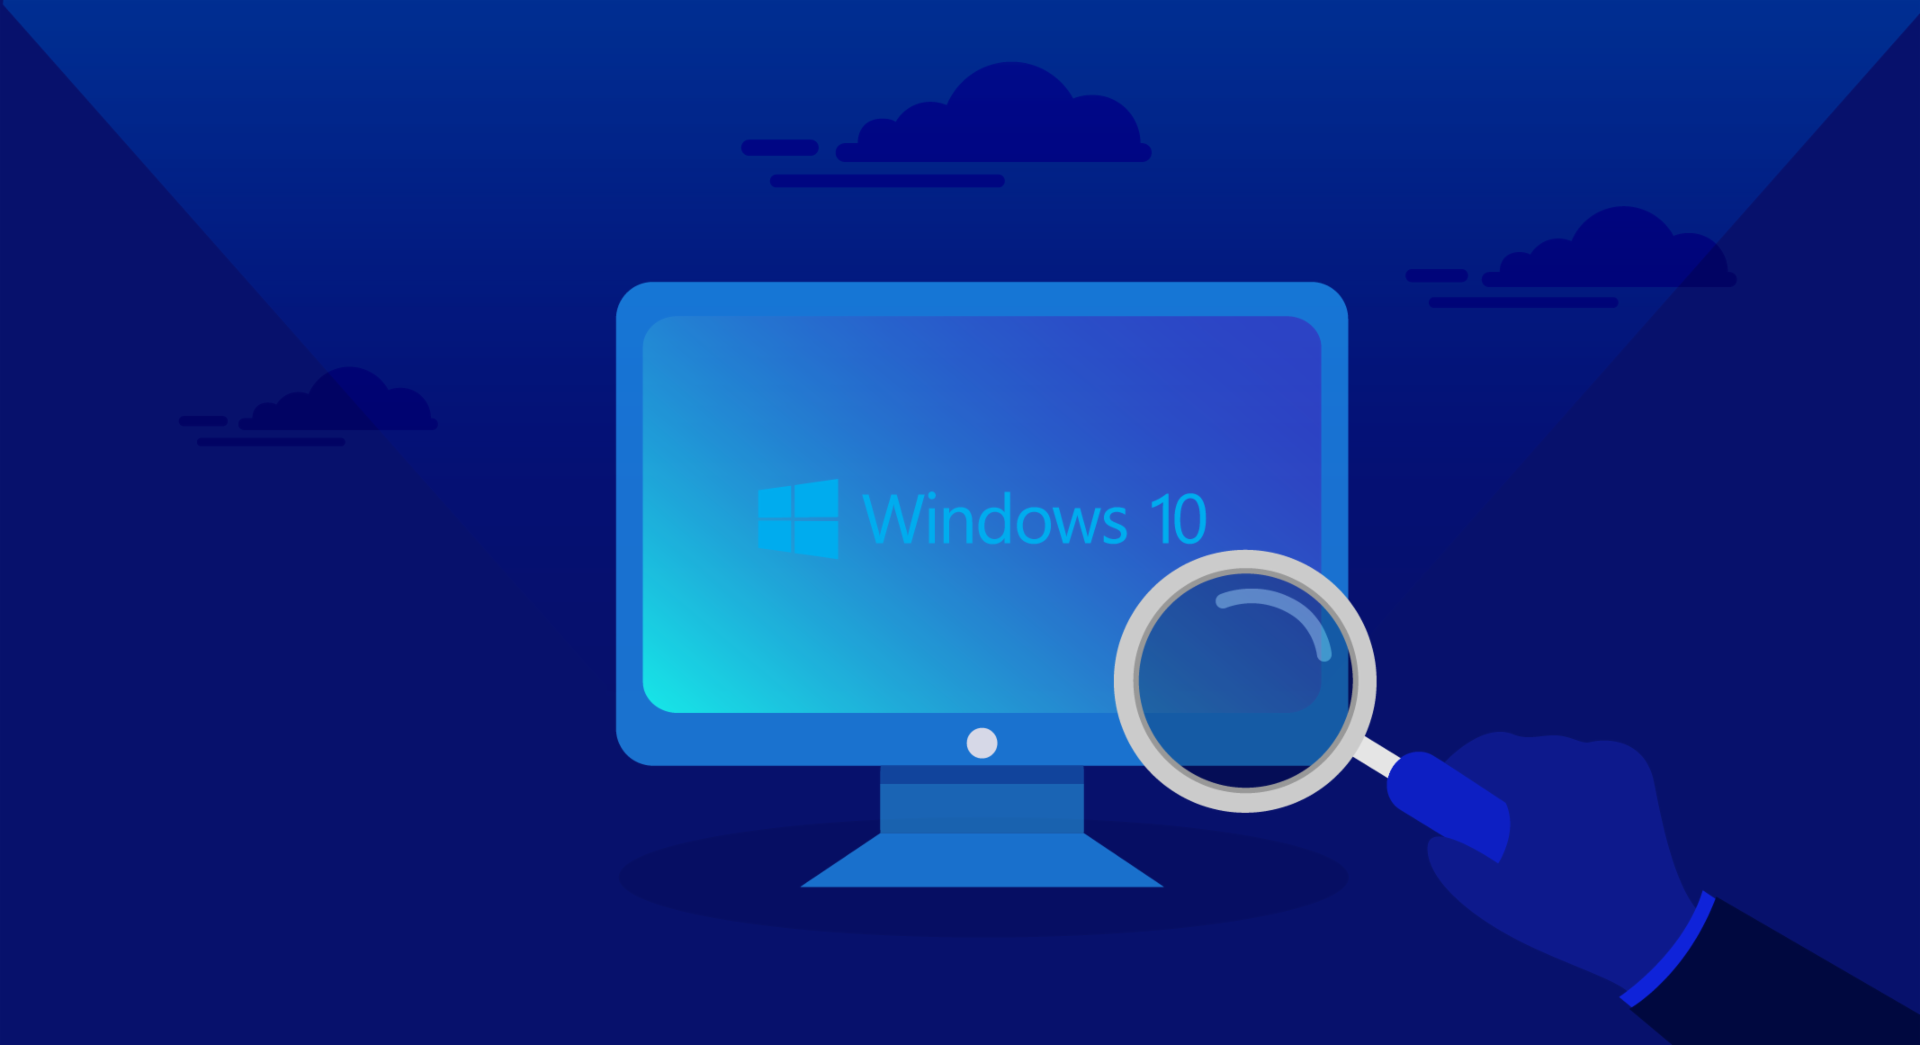 O Windows 10 é o sistema operacional da Microsoft para computadores.